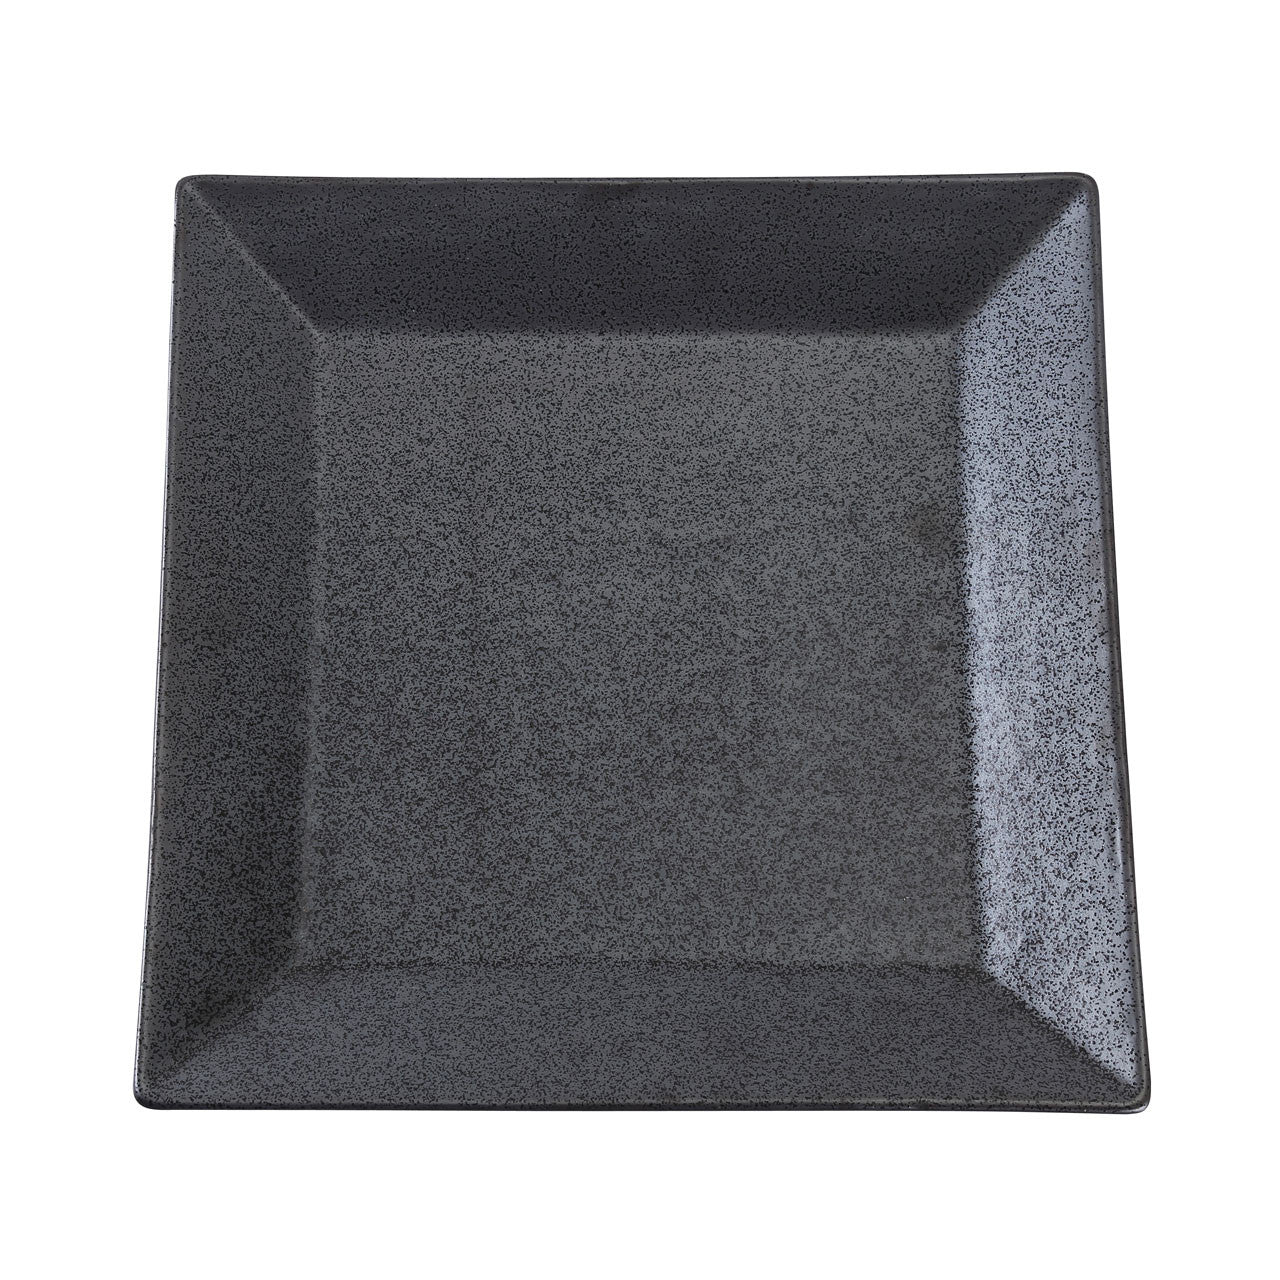 [Clearance] Black Speckled Porcelain Square Rimmed Plate 8